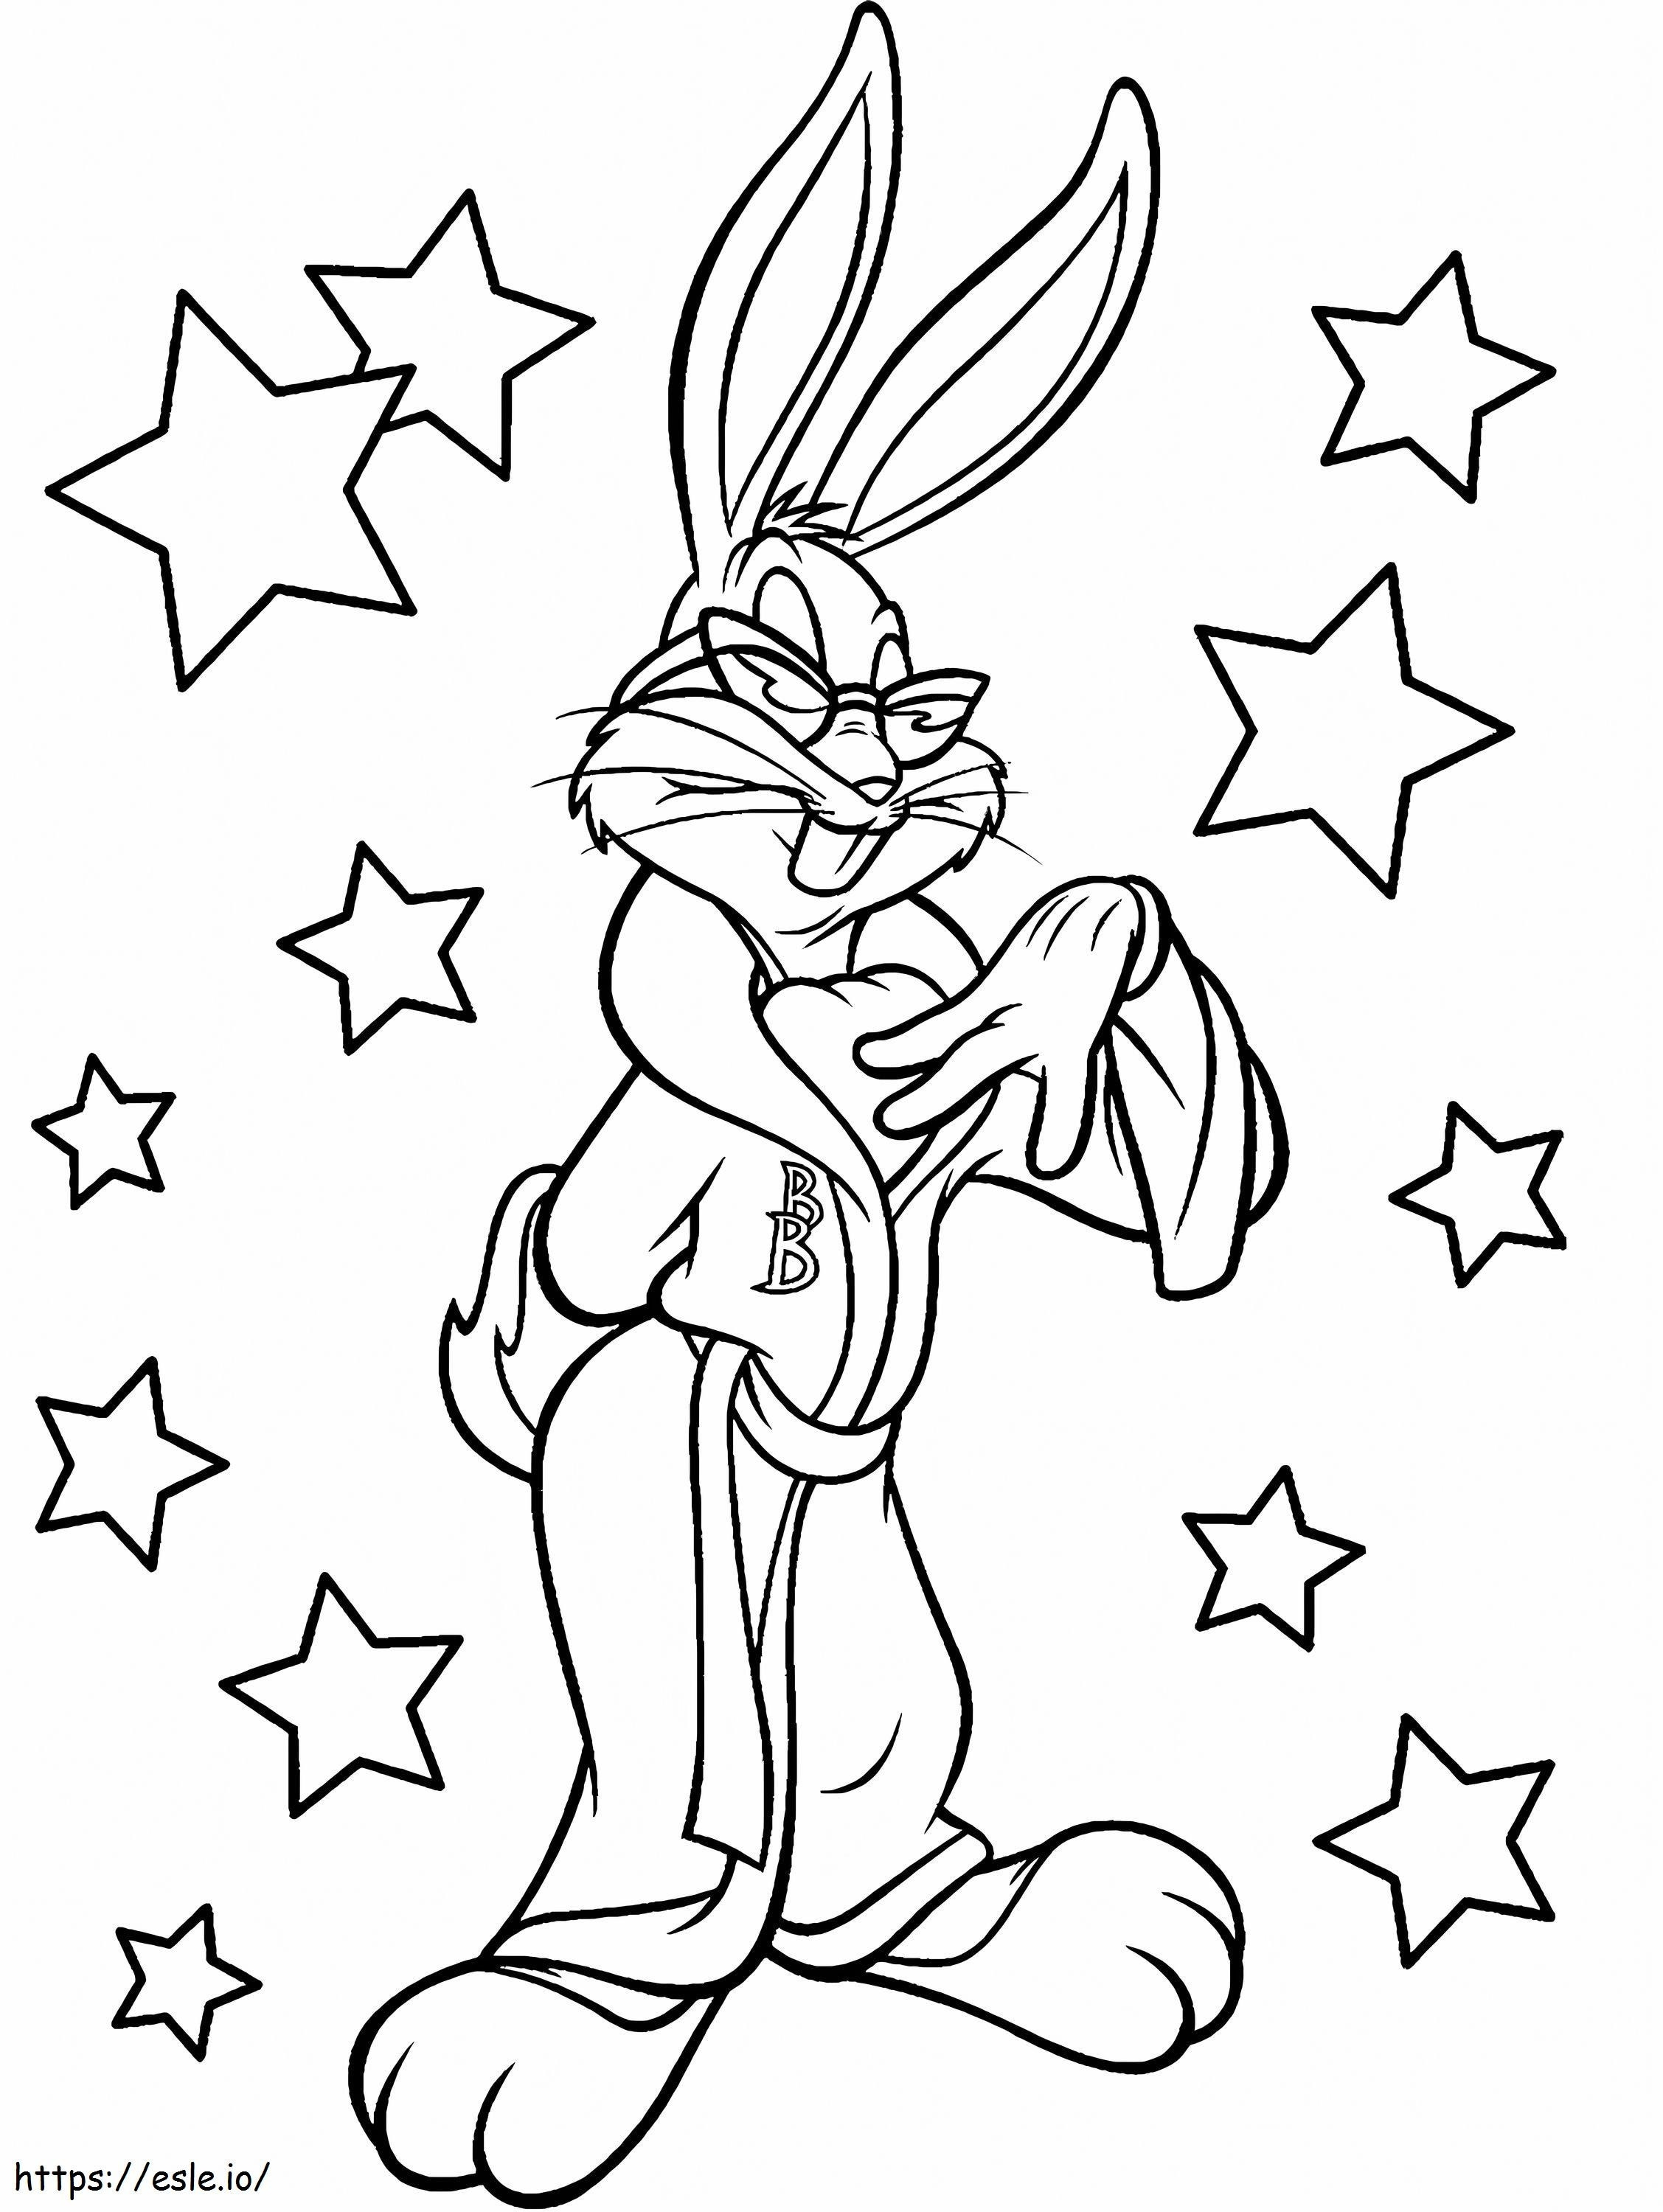 Bugs Bunny Cu Stele de colorat